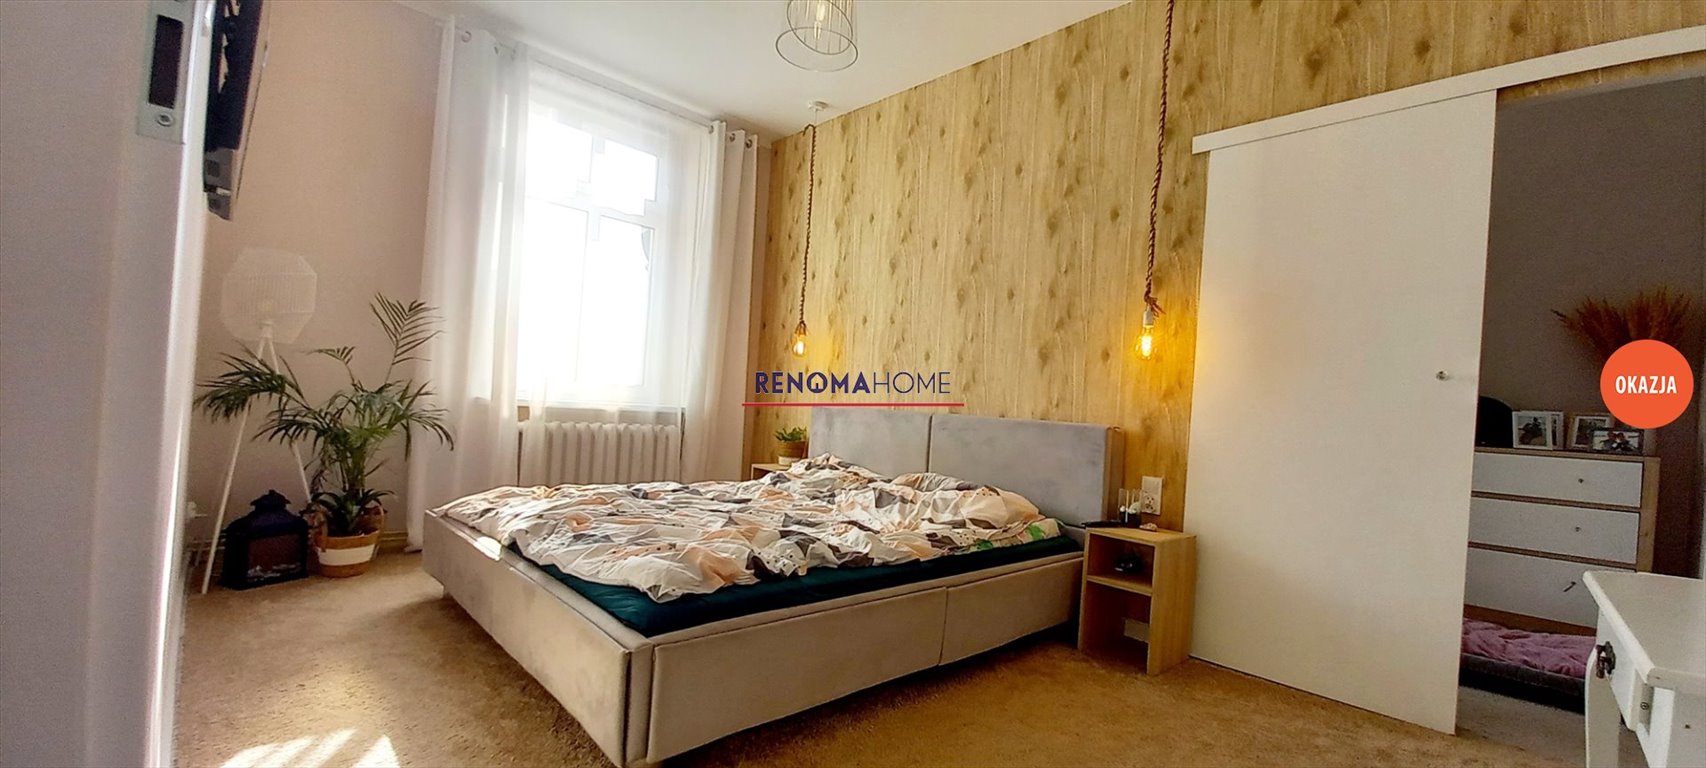 Mieszkanie trzypokojowe na sprzedaż Legnica  78m2 Foto 7